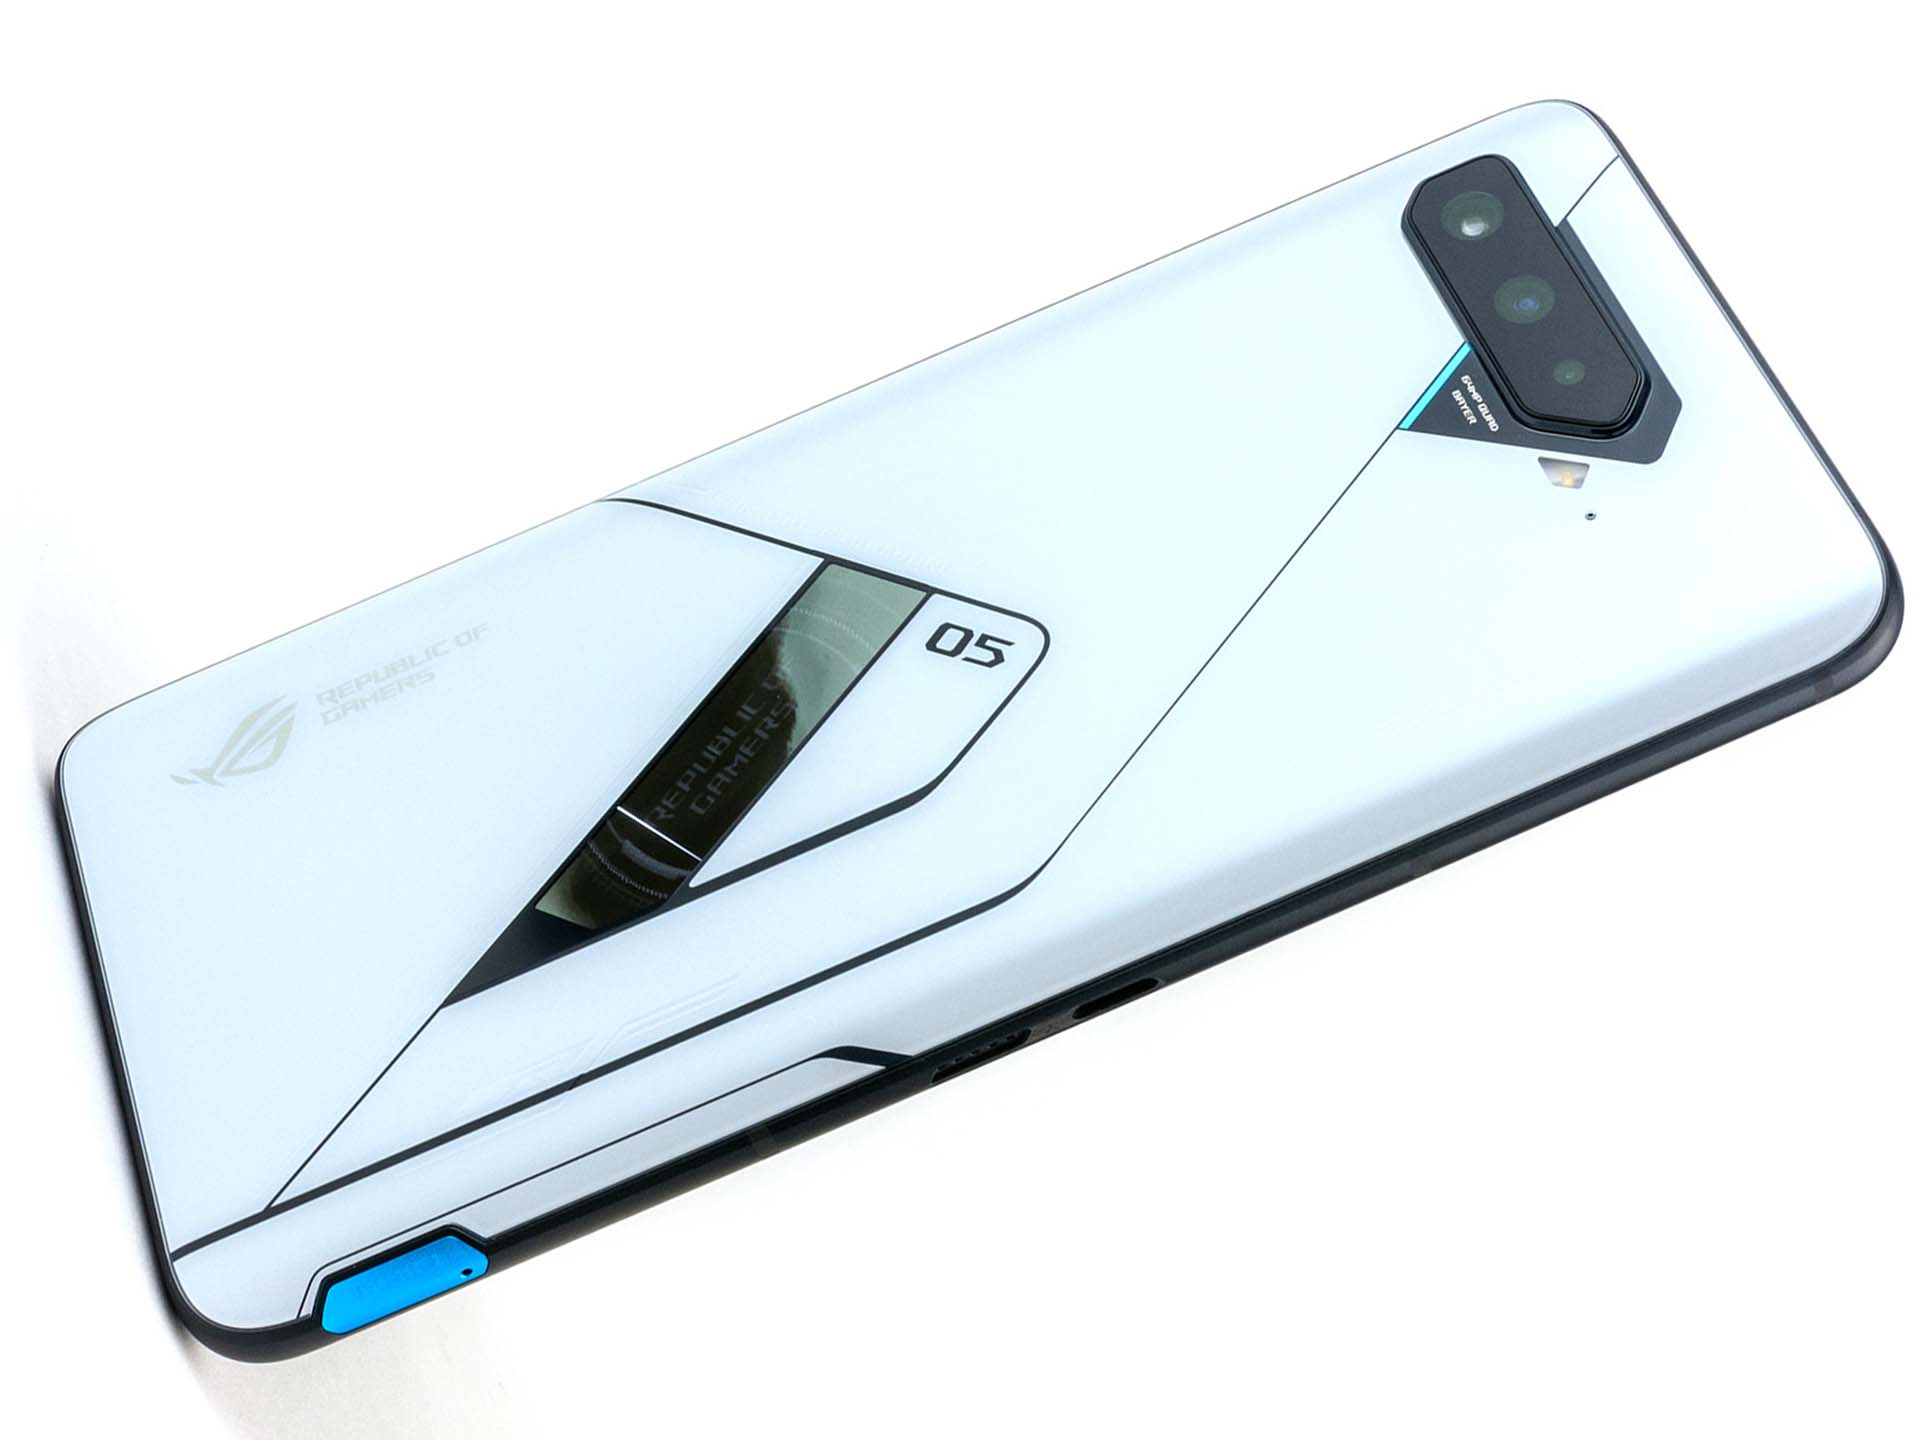 Đánh giá Asus ROG Phone 5 Ultimate sẽ khiến bạn phát cuồng vì những tính năng nổi trội của chiếc điện thoại này. Không chỉ có hiệu năng mạnh mẽ, thiết kế đẹp mắt và âm thanh chất lượng cao, ROG Phone 5 Ultimate còn có nhiều tính năng độc đáo chỉ có ở sản phẩm này.